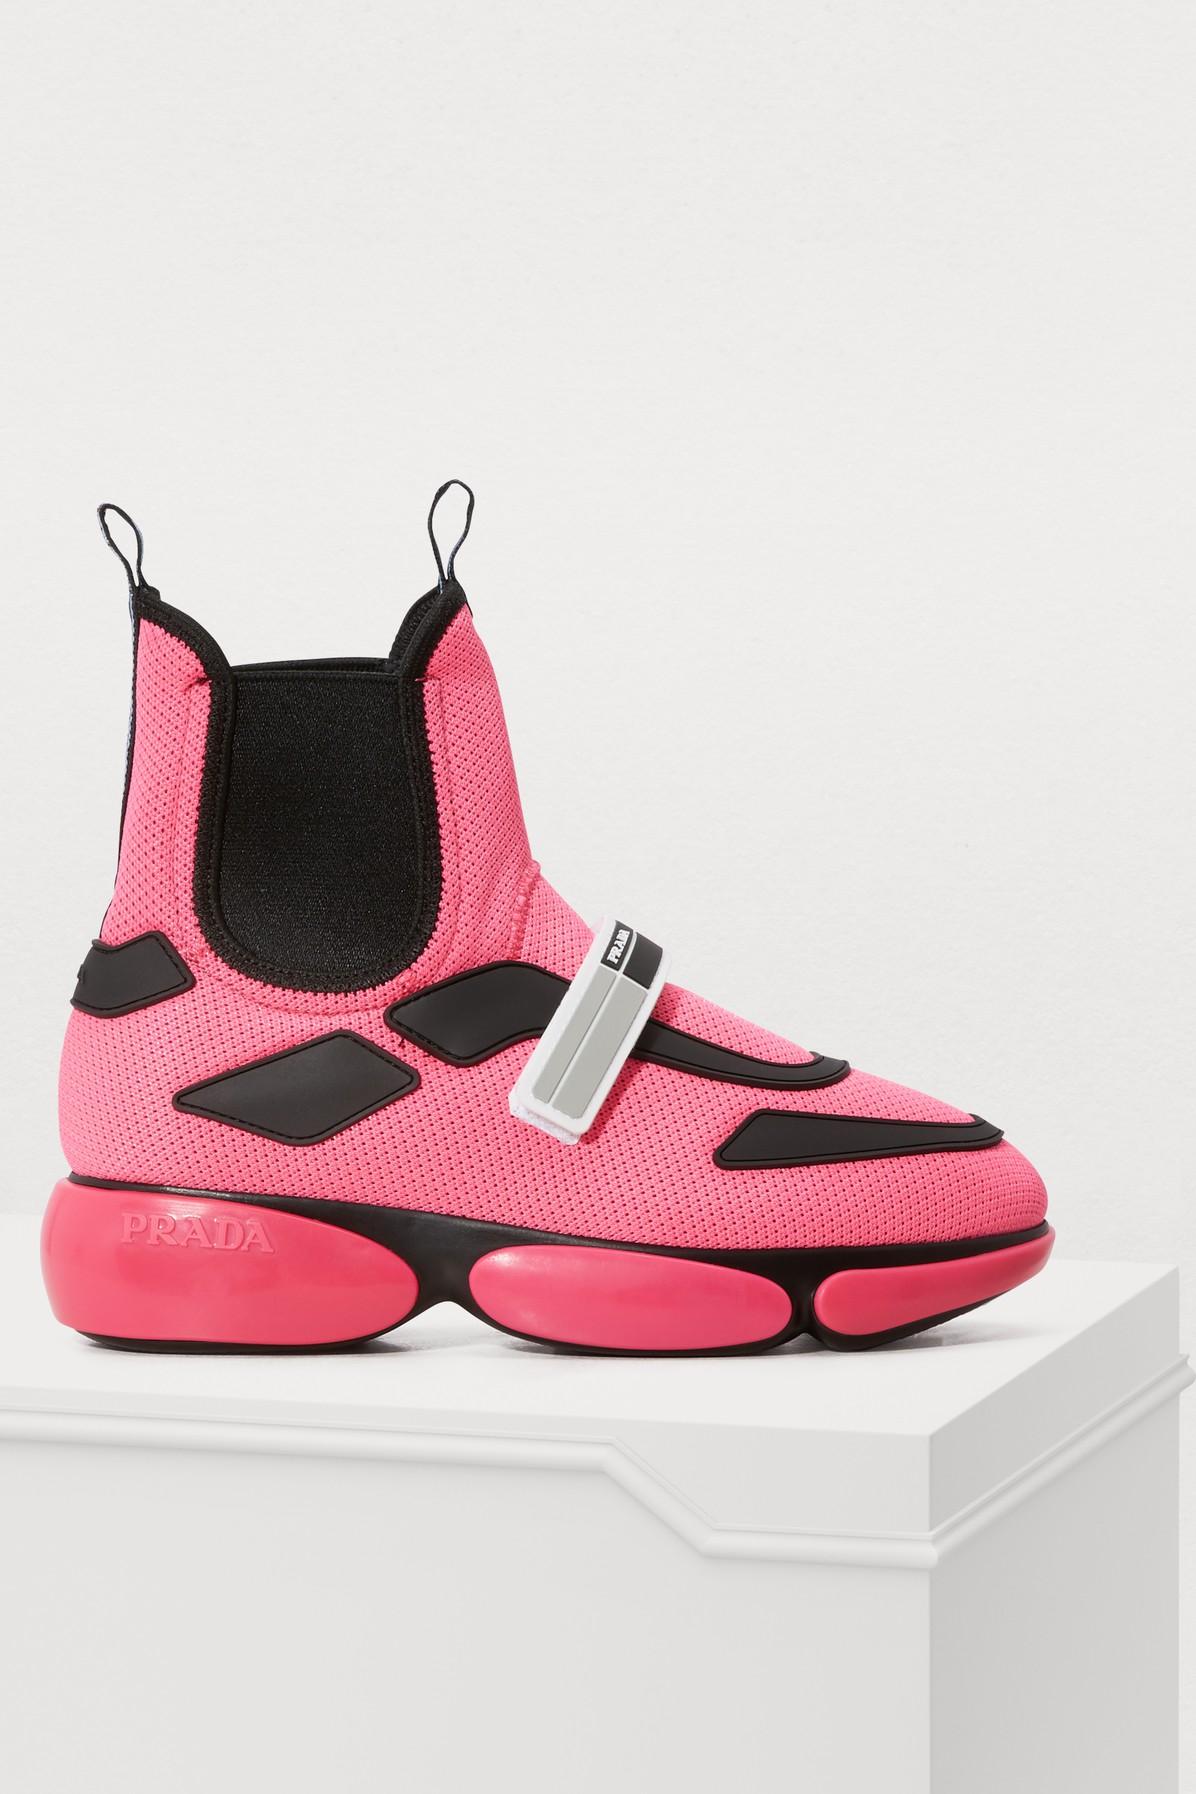 Prada Cloudbust High-top Sneakers in Pink | Lyst